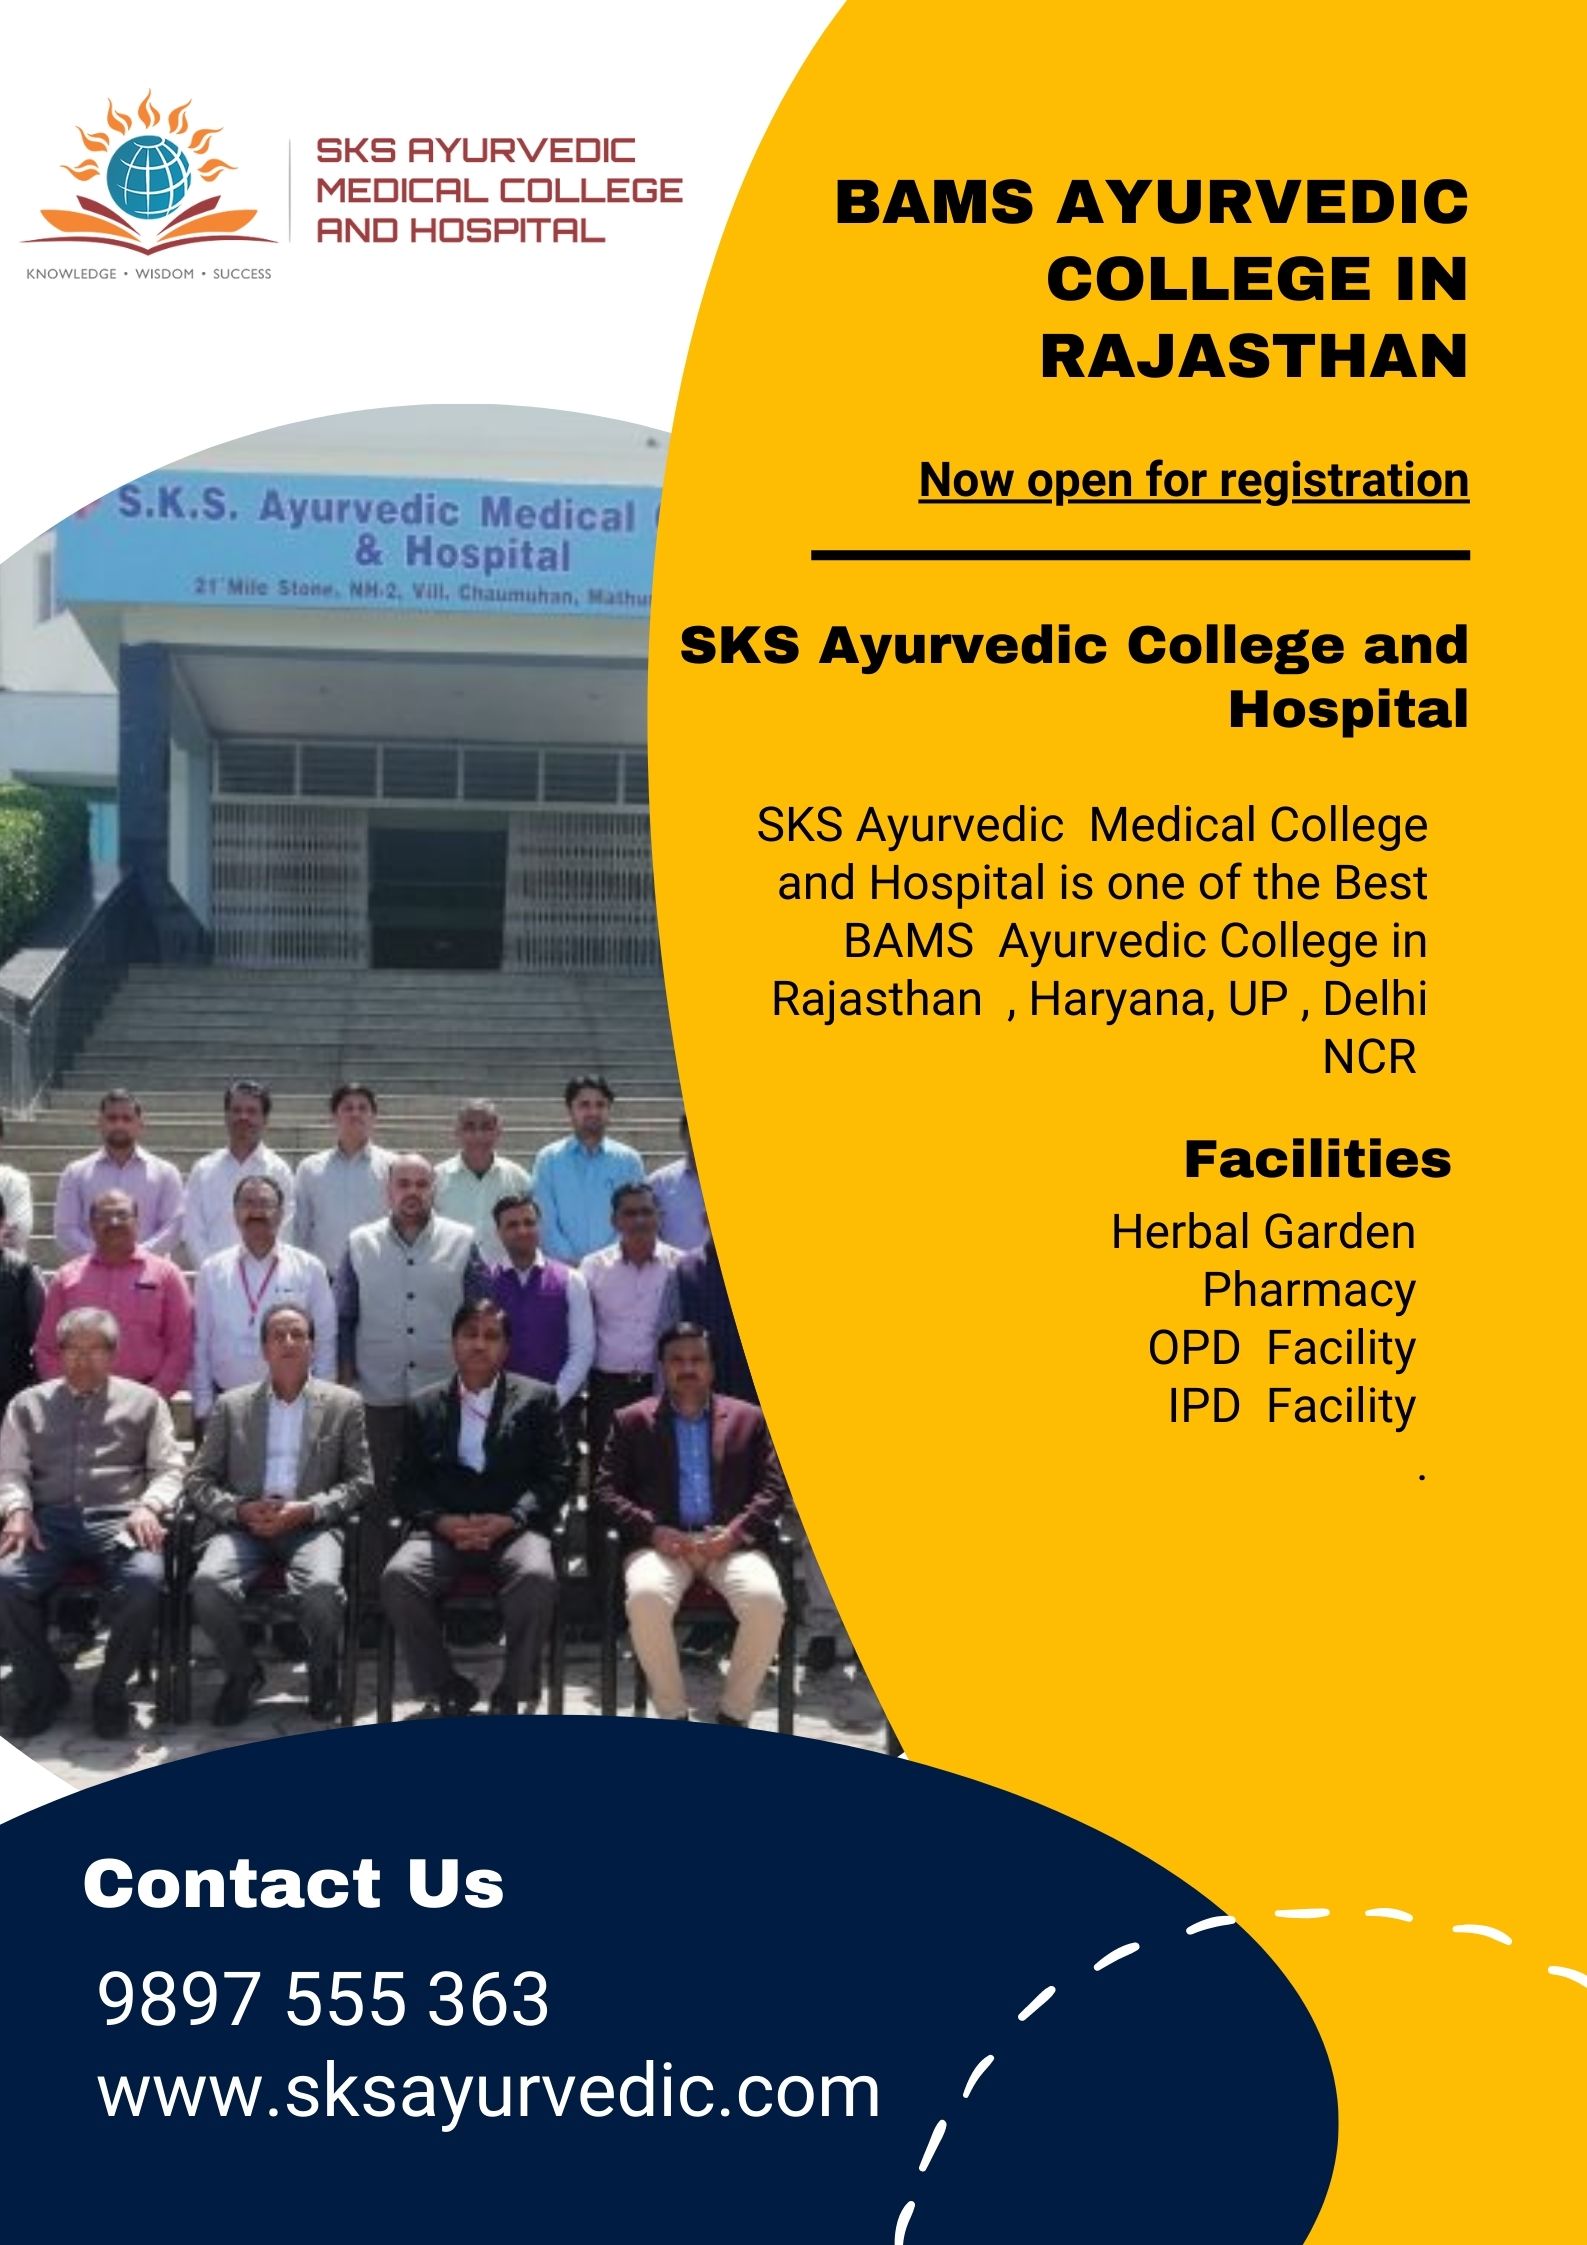 BAMS ayurvedic college in Rajasthan